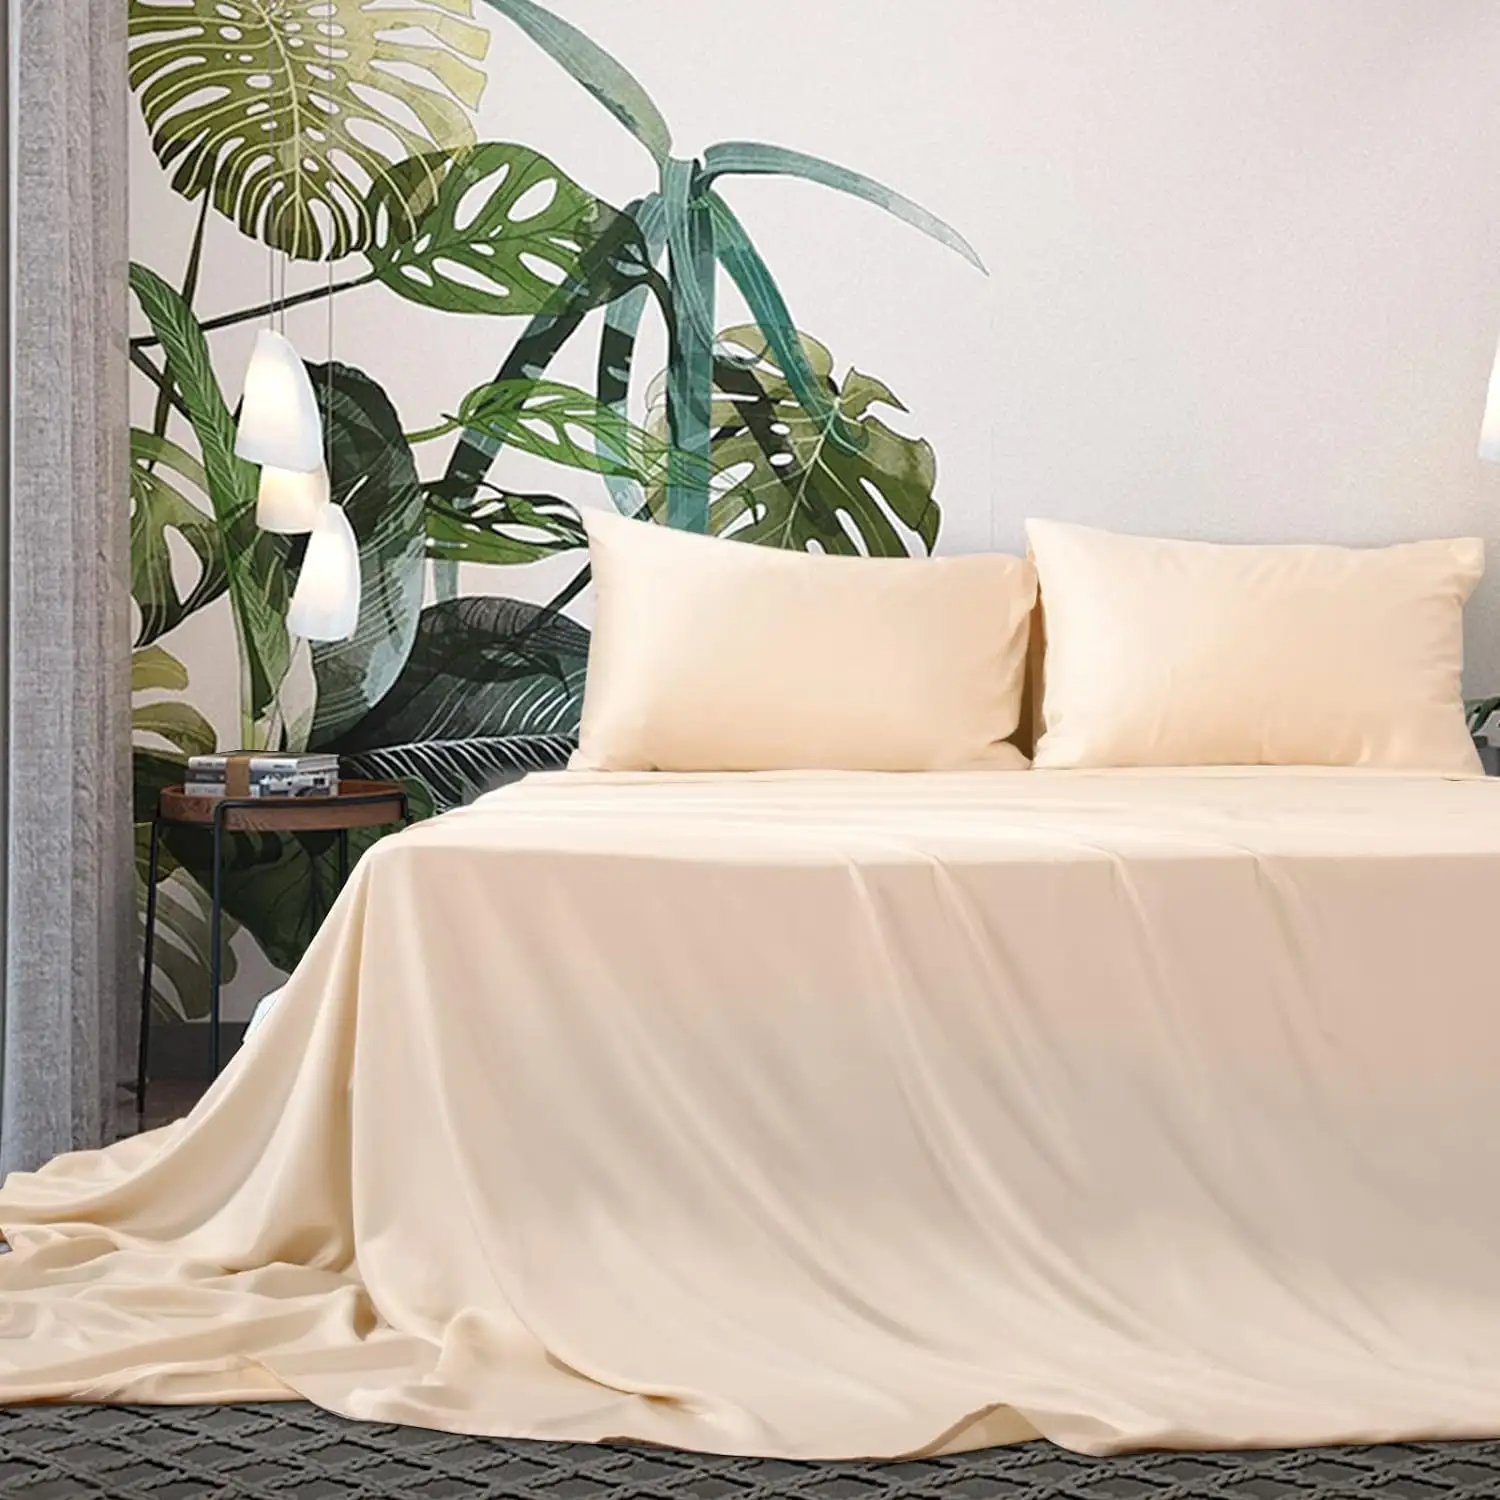 ผ้าปูที่นอนหรูหรา Tencel บริสุทธิ์ 100% ผ้าปูที่นอนขนาดคิงไซส์ชุดเครื่องนอนผ้าปูที่นอนไลโอเซลล์ผ้าปูที่นอนกระเป๋าลึก